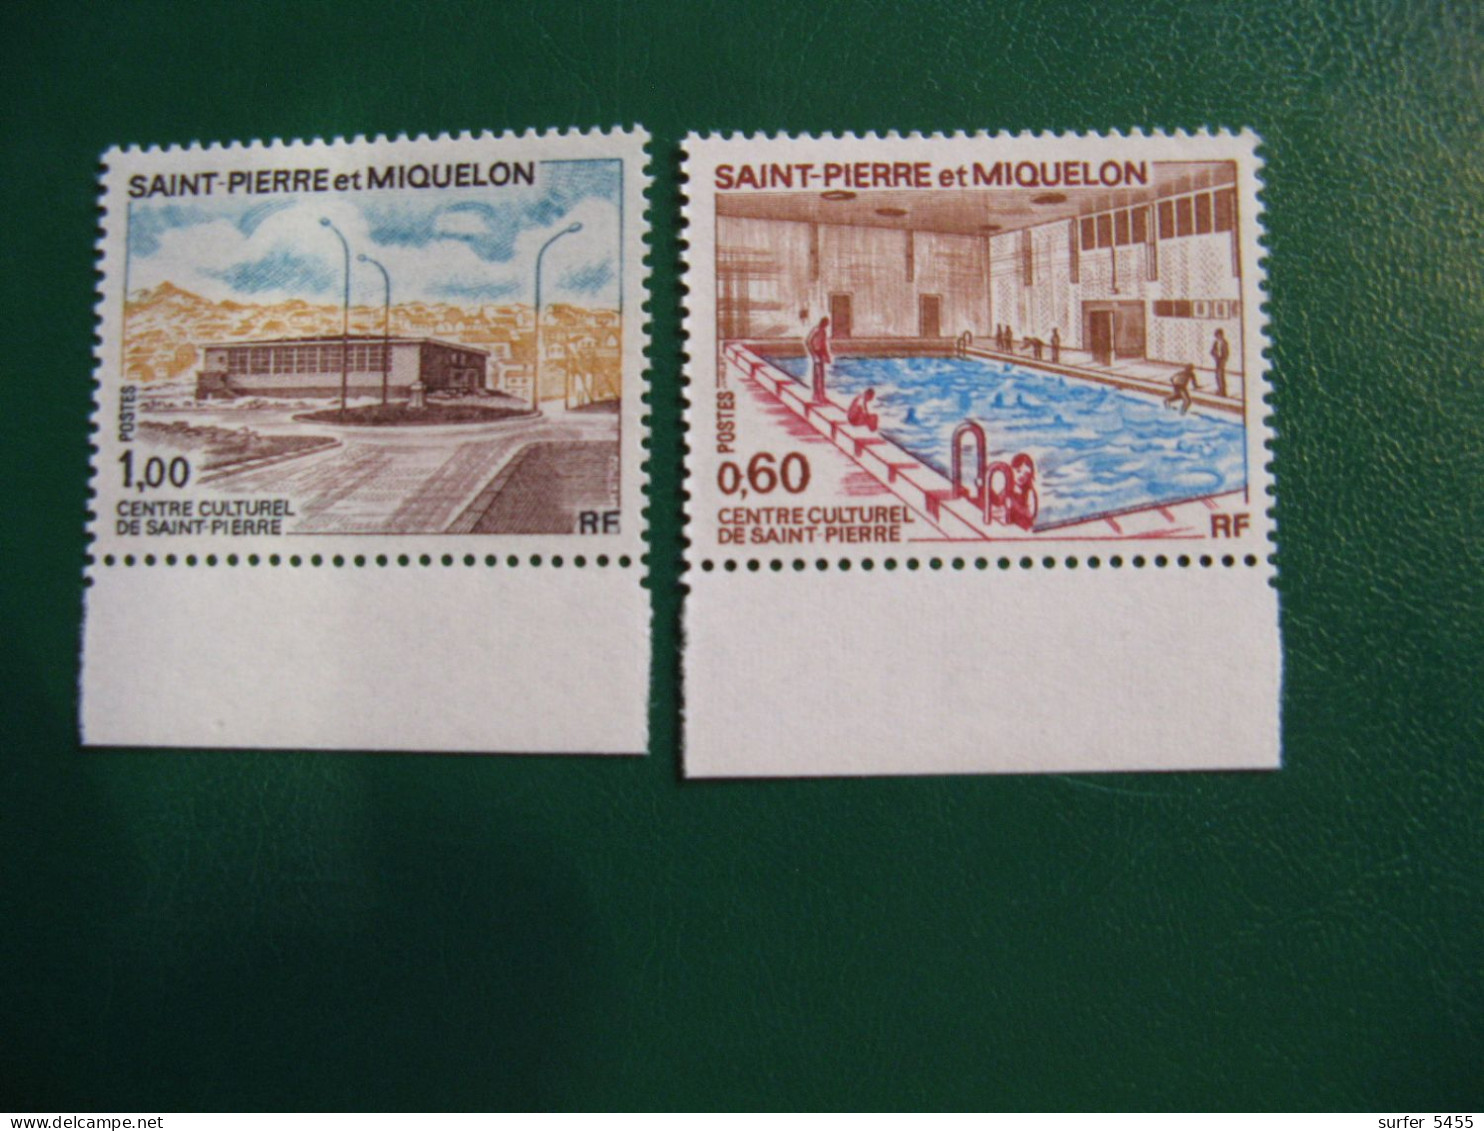 SAINT PIERRE ET MIQUELON YVERT POSTE ORDINAIRE N° 431/432 NEUFS** LUXE - MNH -  COTE 16,00 EUROS - Unused Stamps